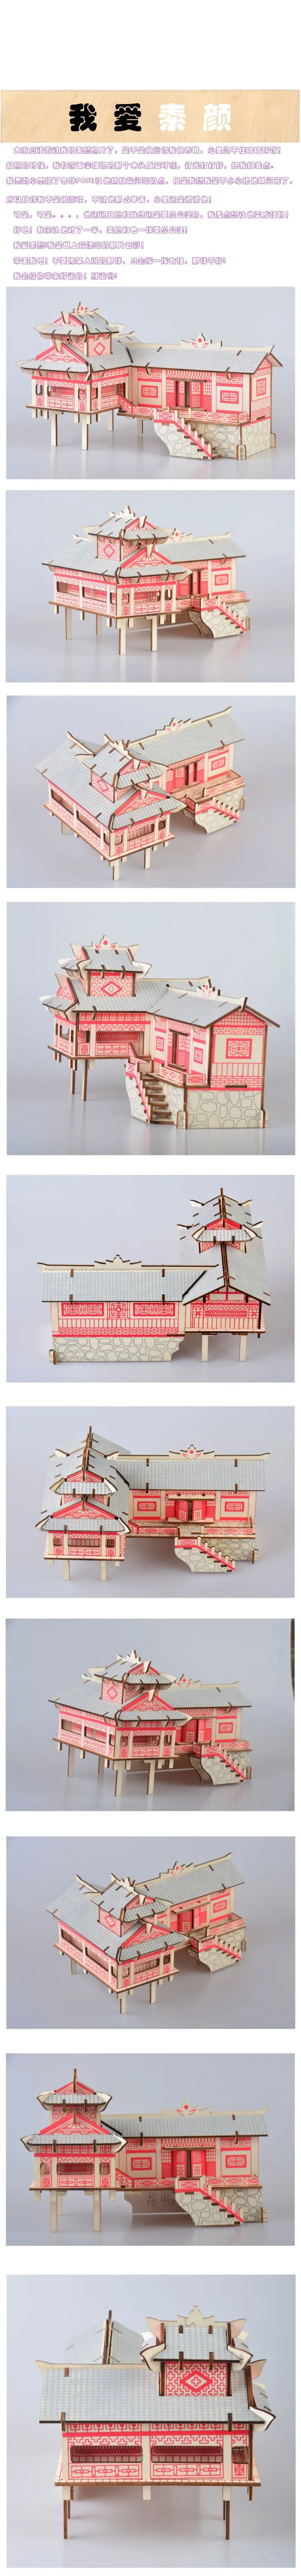 Xin специально для горячей продажи Западный Хунань ходунное здание 3D деревянные 3D головоломки модель детская развивающая игрушка